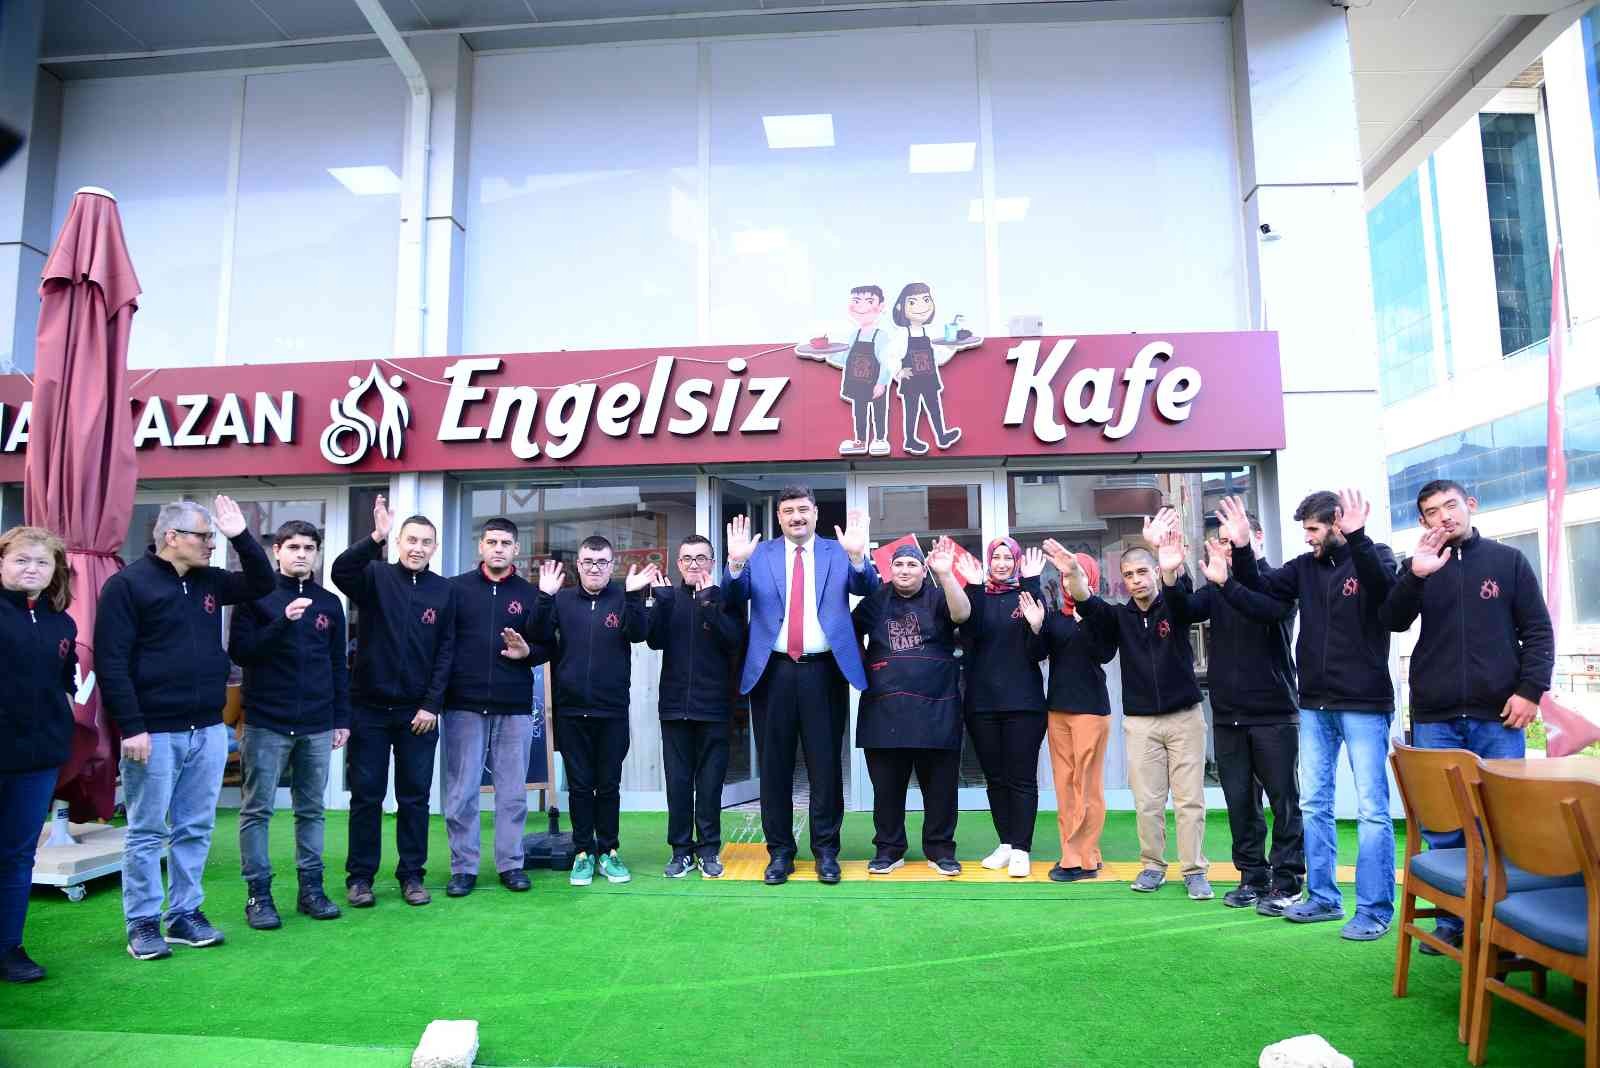 Ankara’da ‘Engelsiz Kafe’ engelsiz misafirlerini ağırladı #ankara